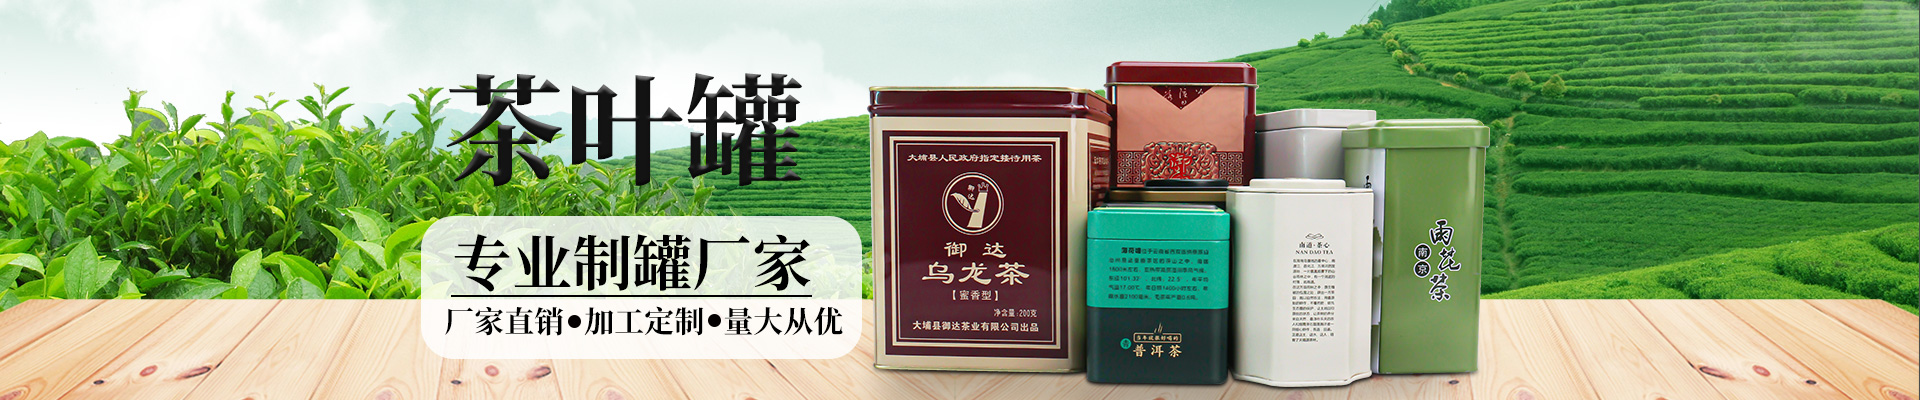 茶叶铁盒茶叶易倍体育中国股份有限公司官网小横图